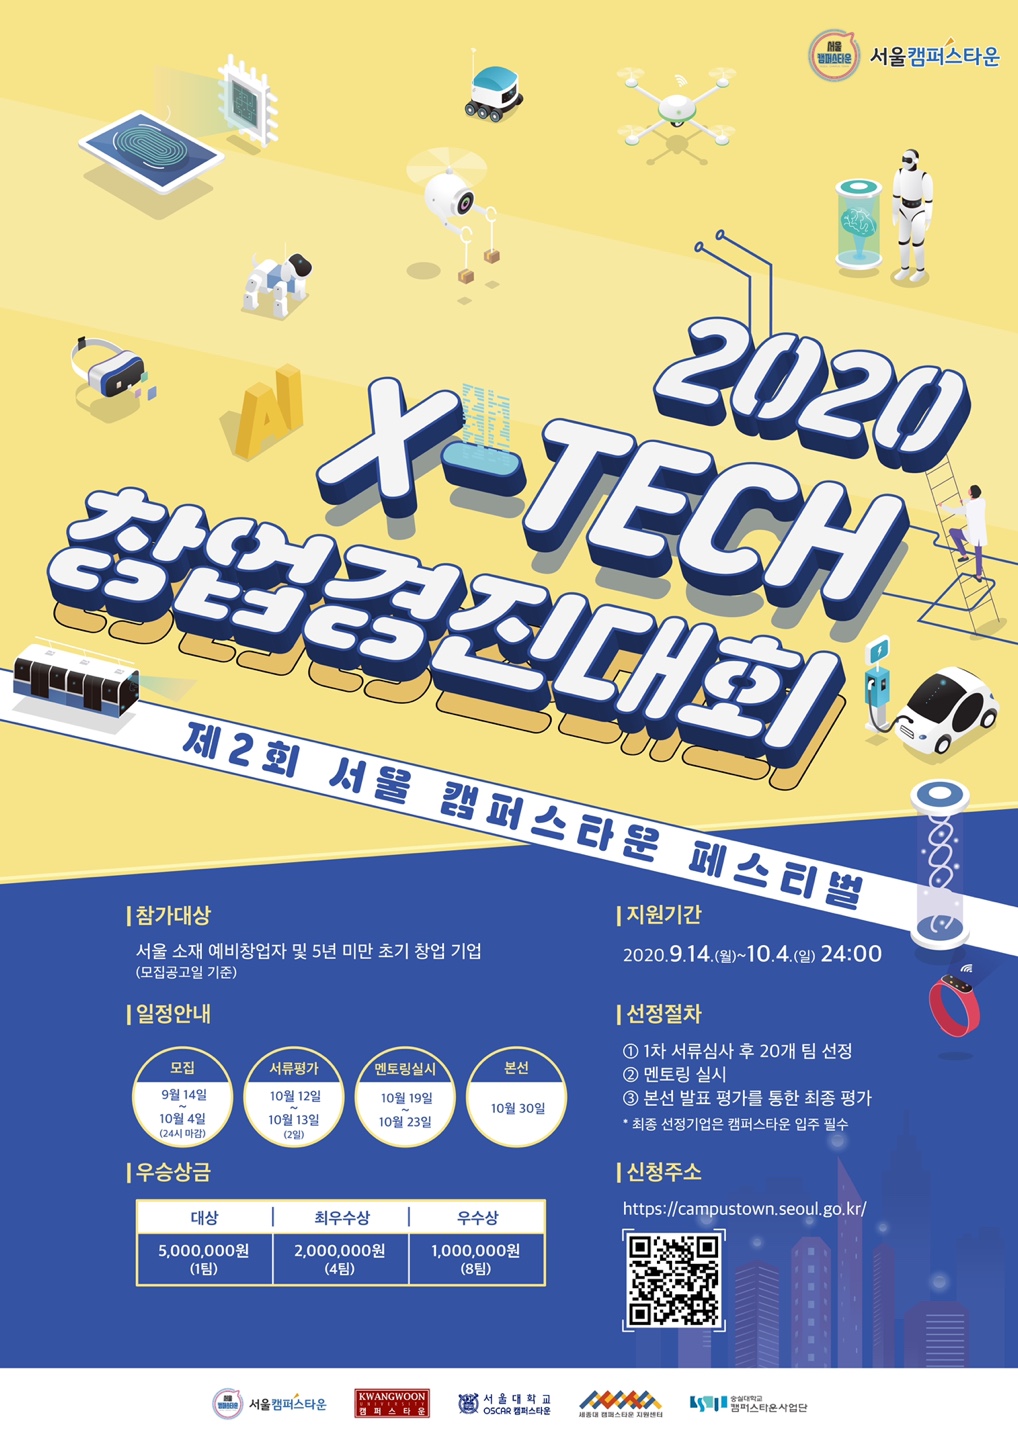 ‘서울 캠퍼스타운’ X-Tech 창업경진대회